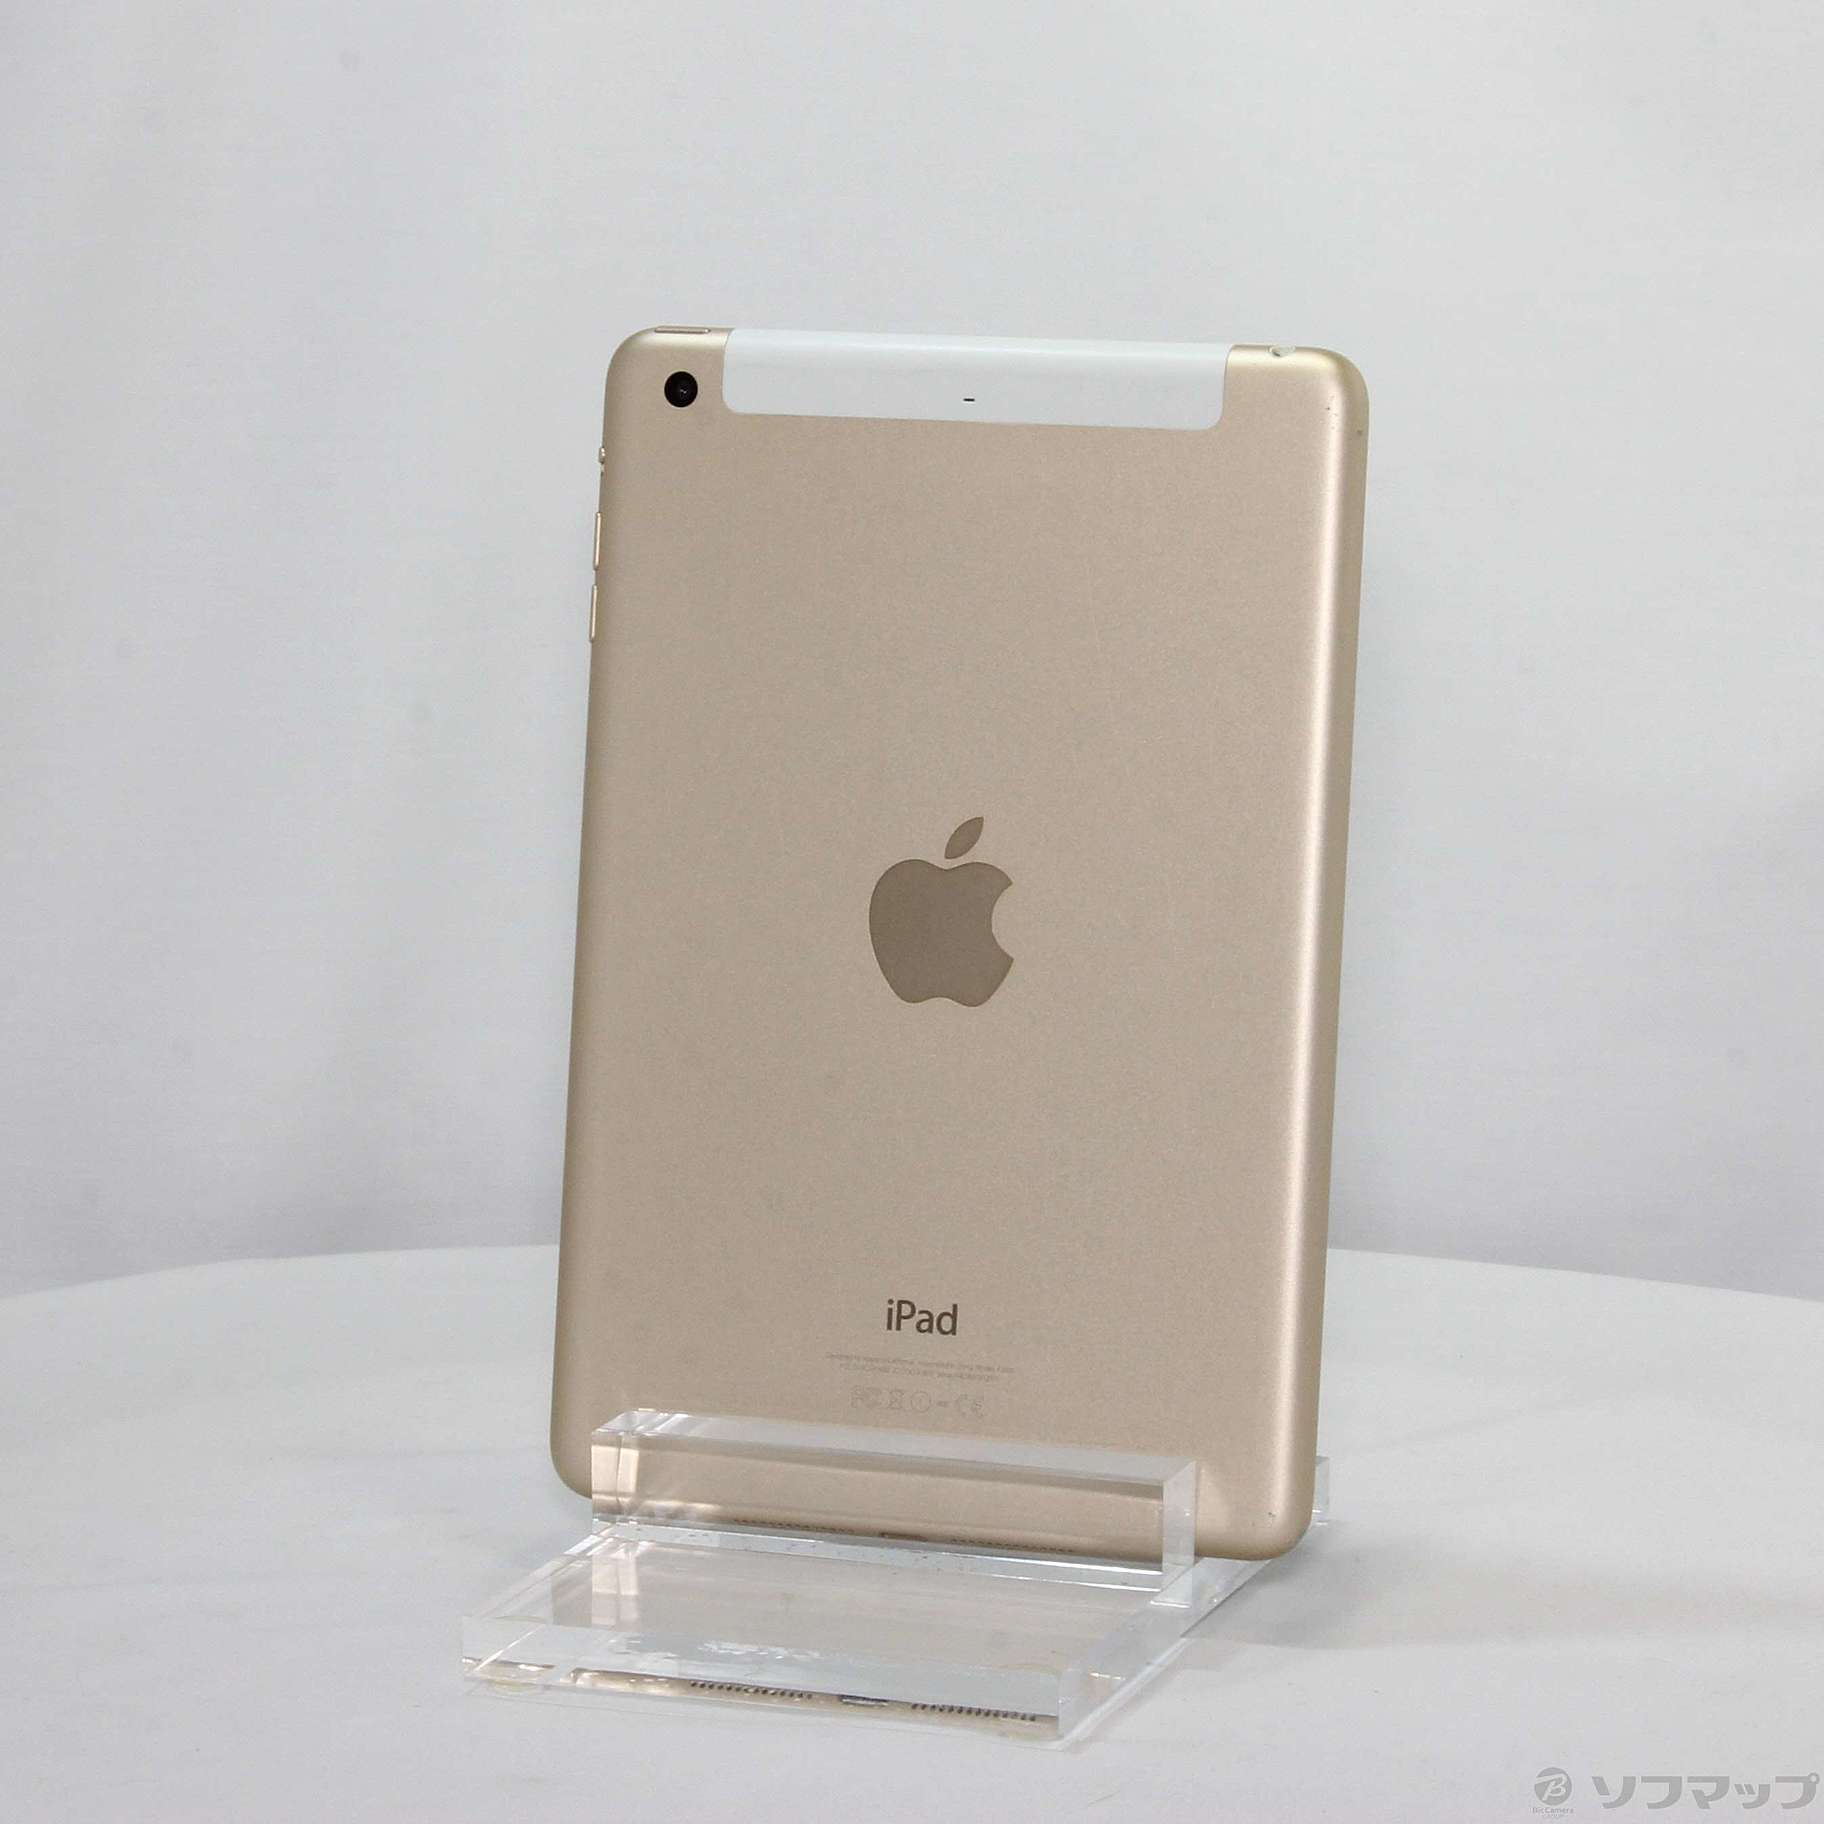 2014年容量iPad mini 3 64GB ゴールド - www.kairosinsurancegroup.com